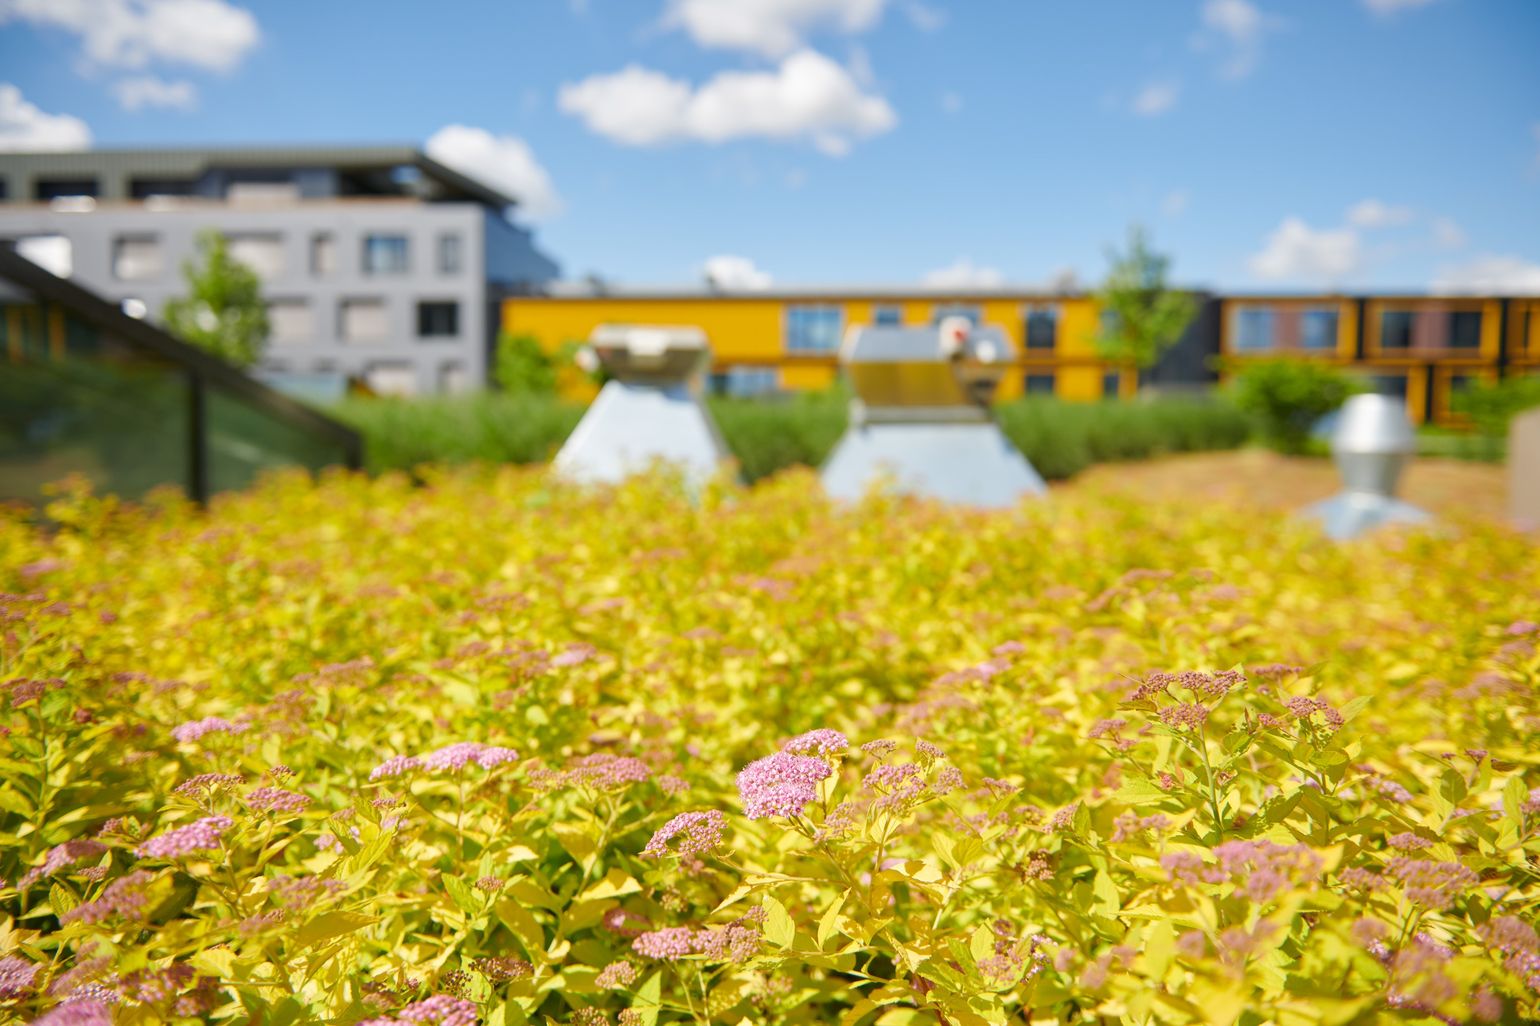 Intensive Dachbepflanzung mit gelben Stauden in Nahaufnahme.